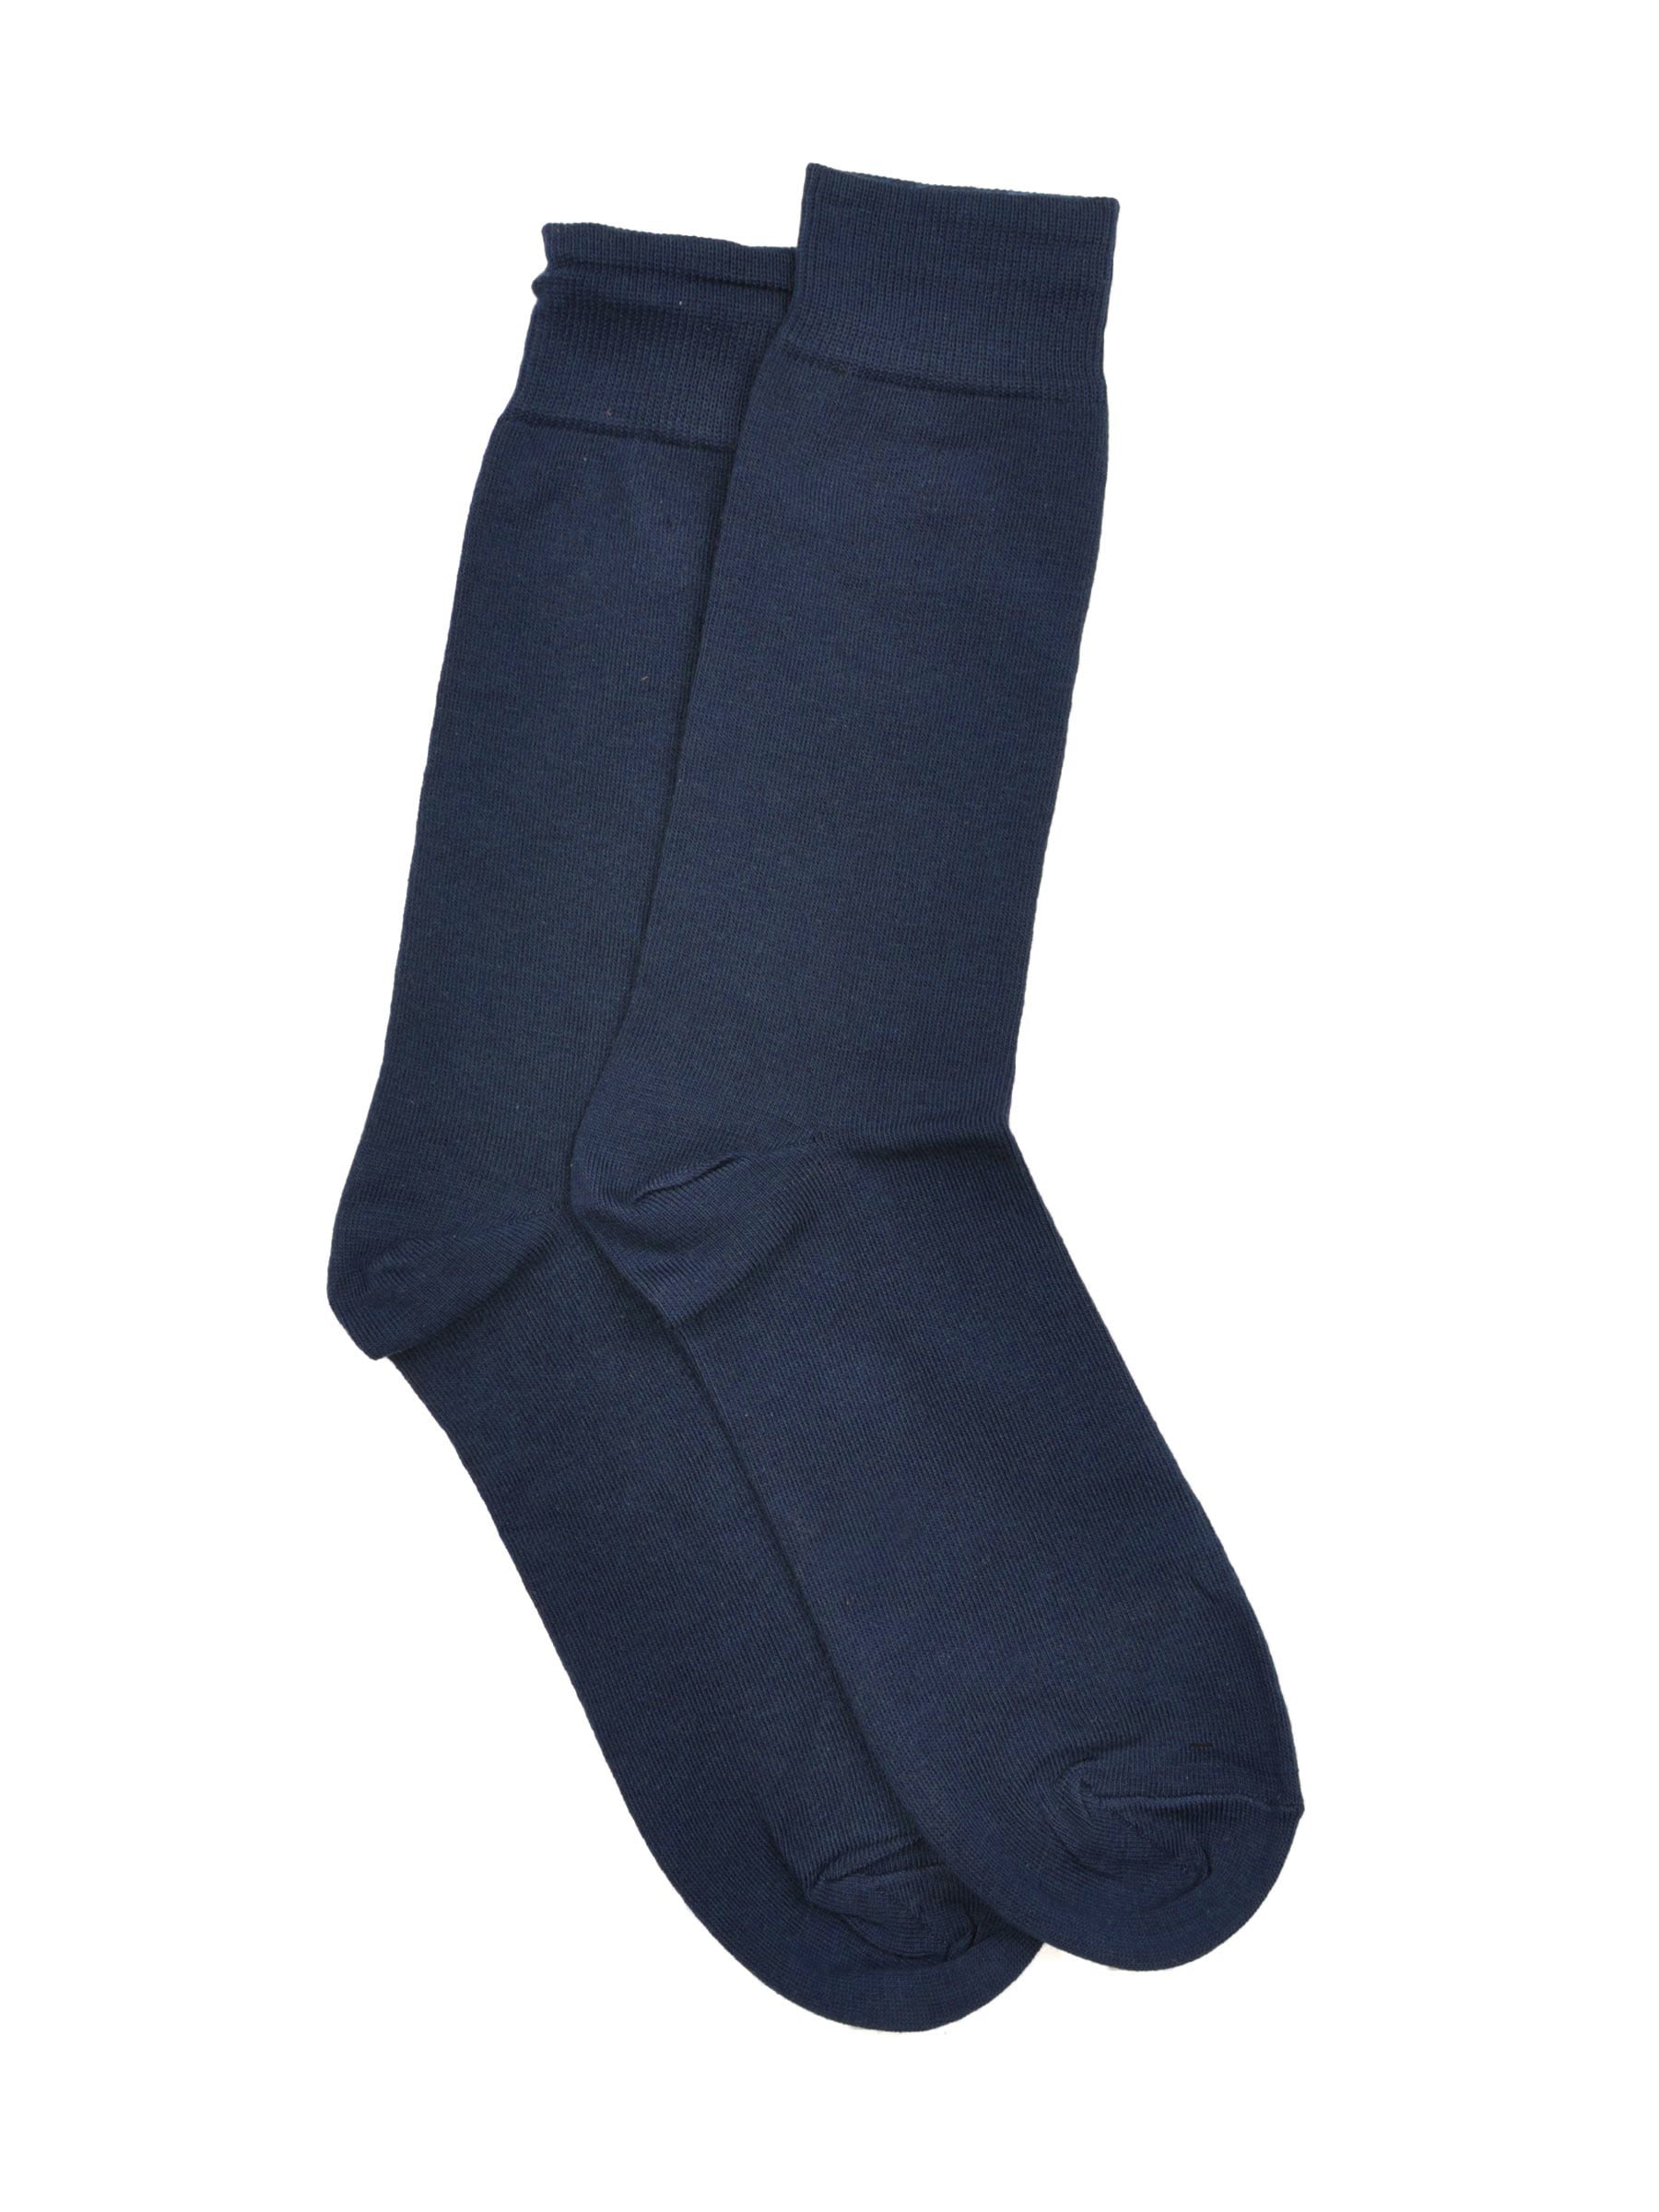 Reid & Taylor Men Solid  Navy Blue Socks